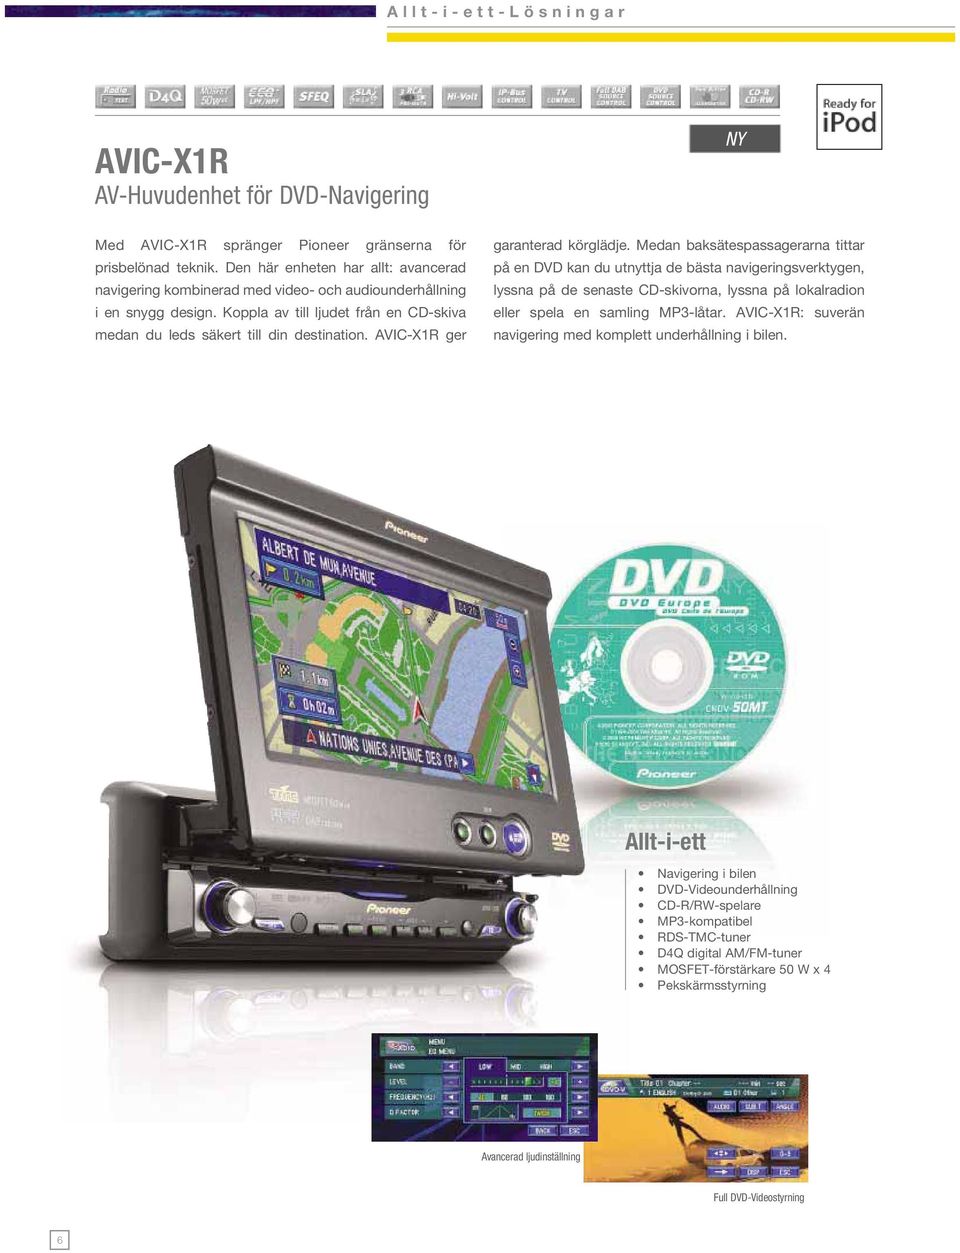 AVIC-X1R ger garanterad körglädje.